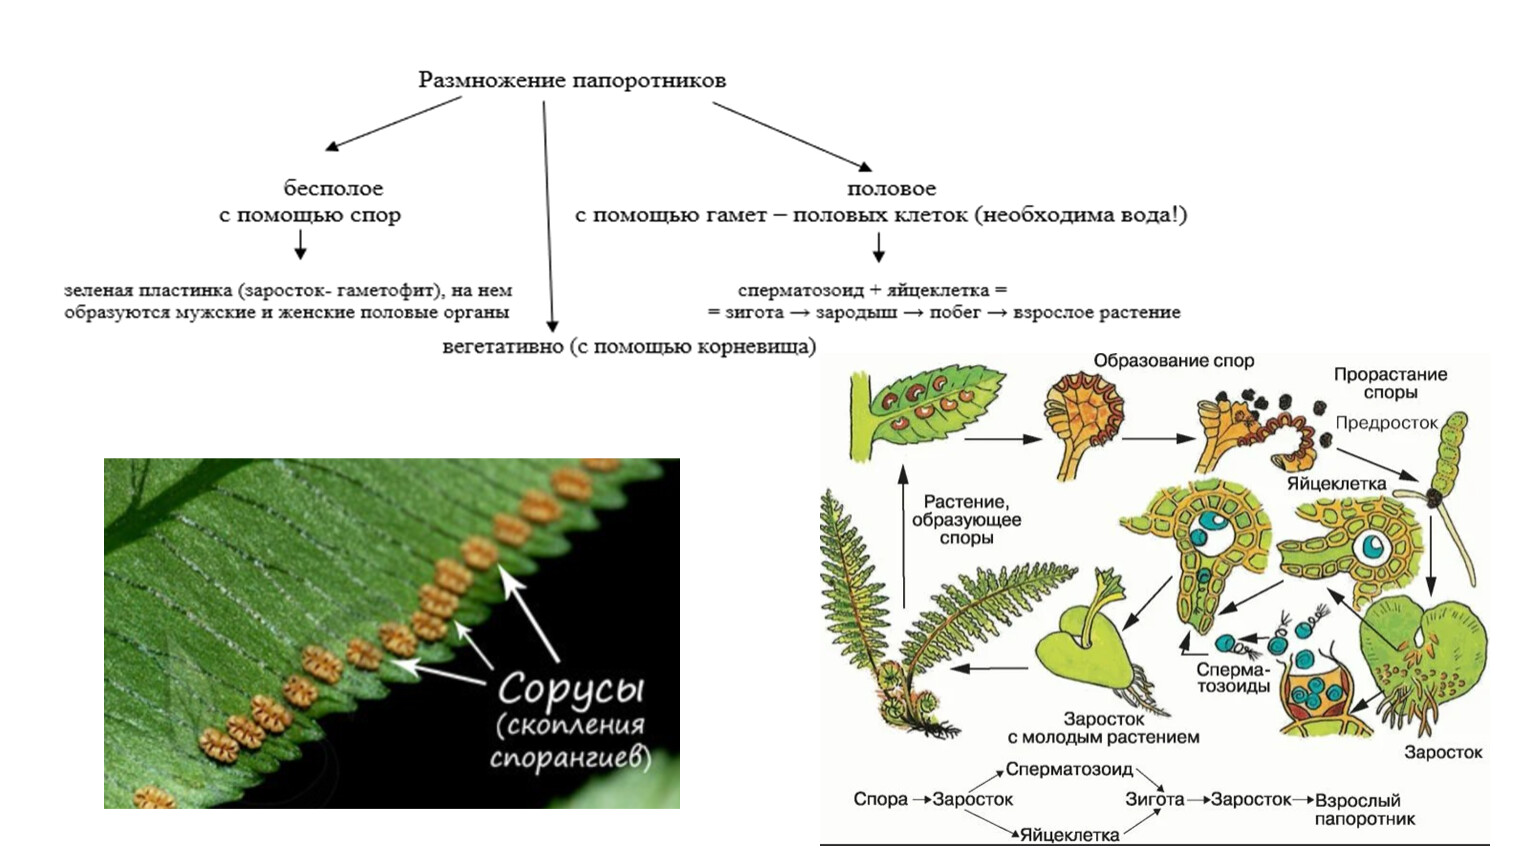 Что такое размножение спорами. Гаметофит плауна. Жизненный цикл папоротника орляка. Заросток плаунов. Схема развития споровых растений.